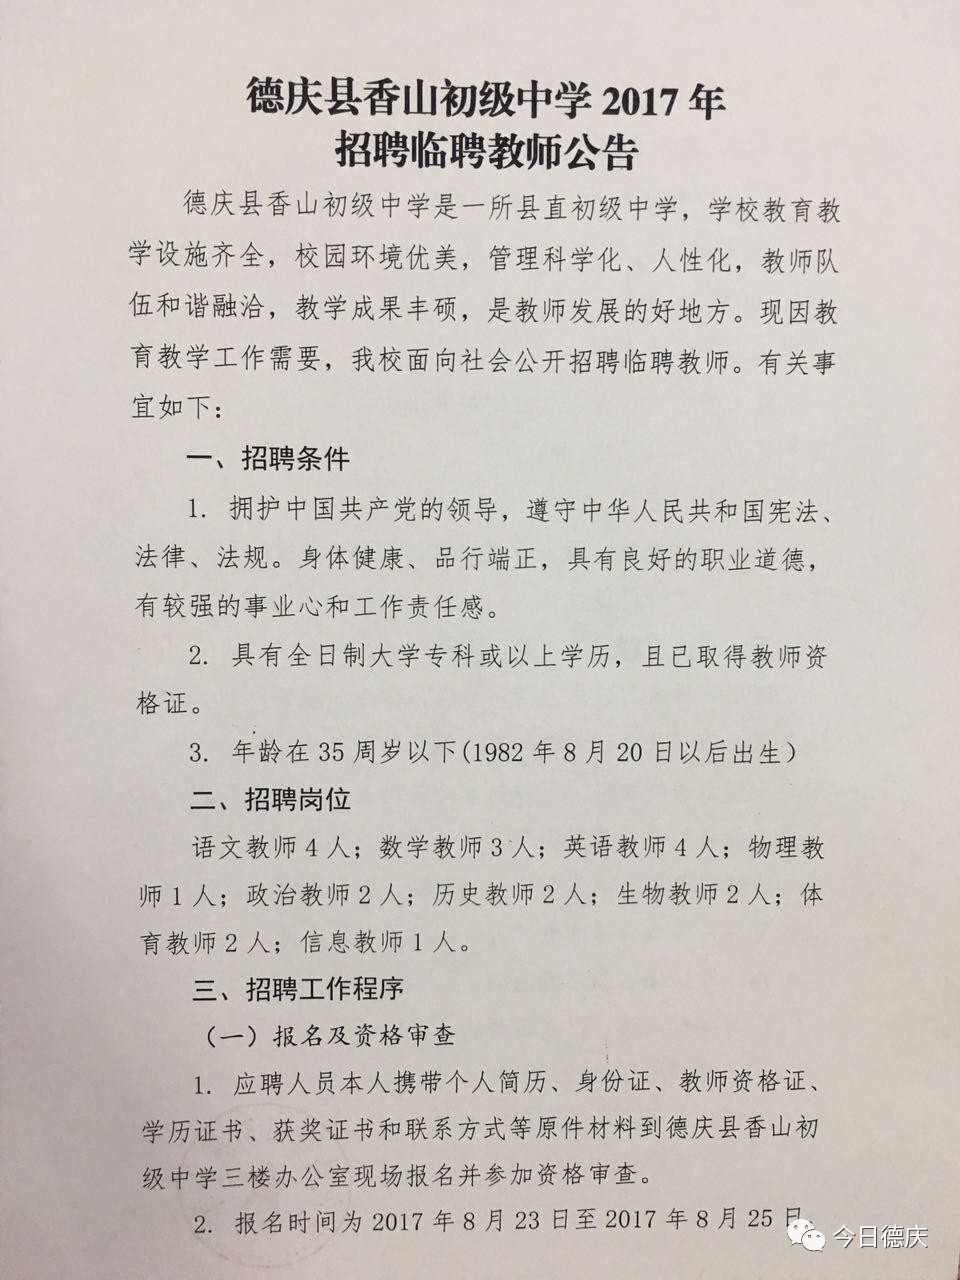 庆香山中学招聘21名老师,还有这些行政助理,生